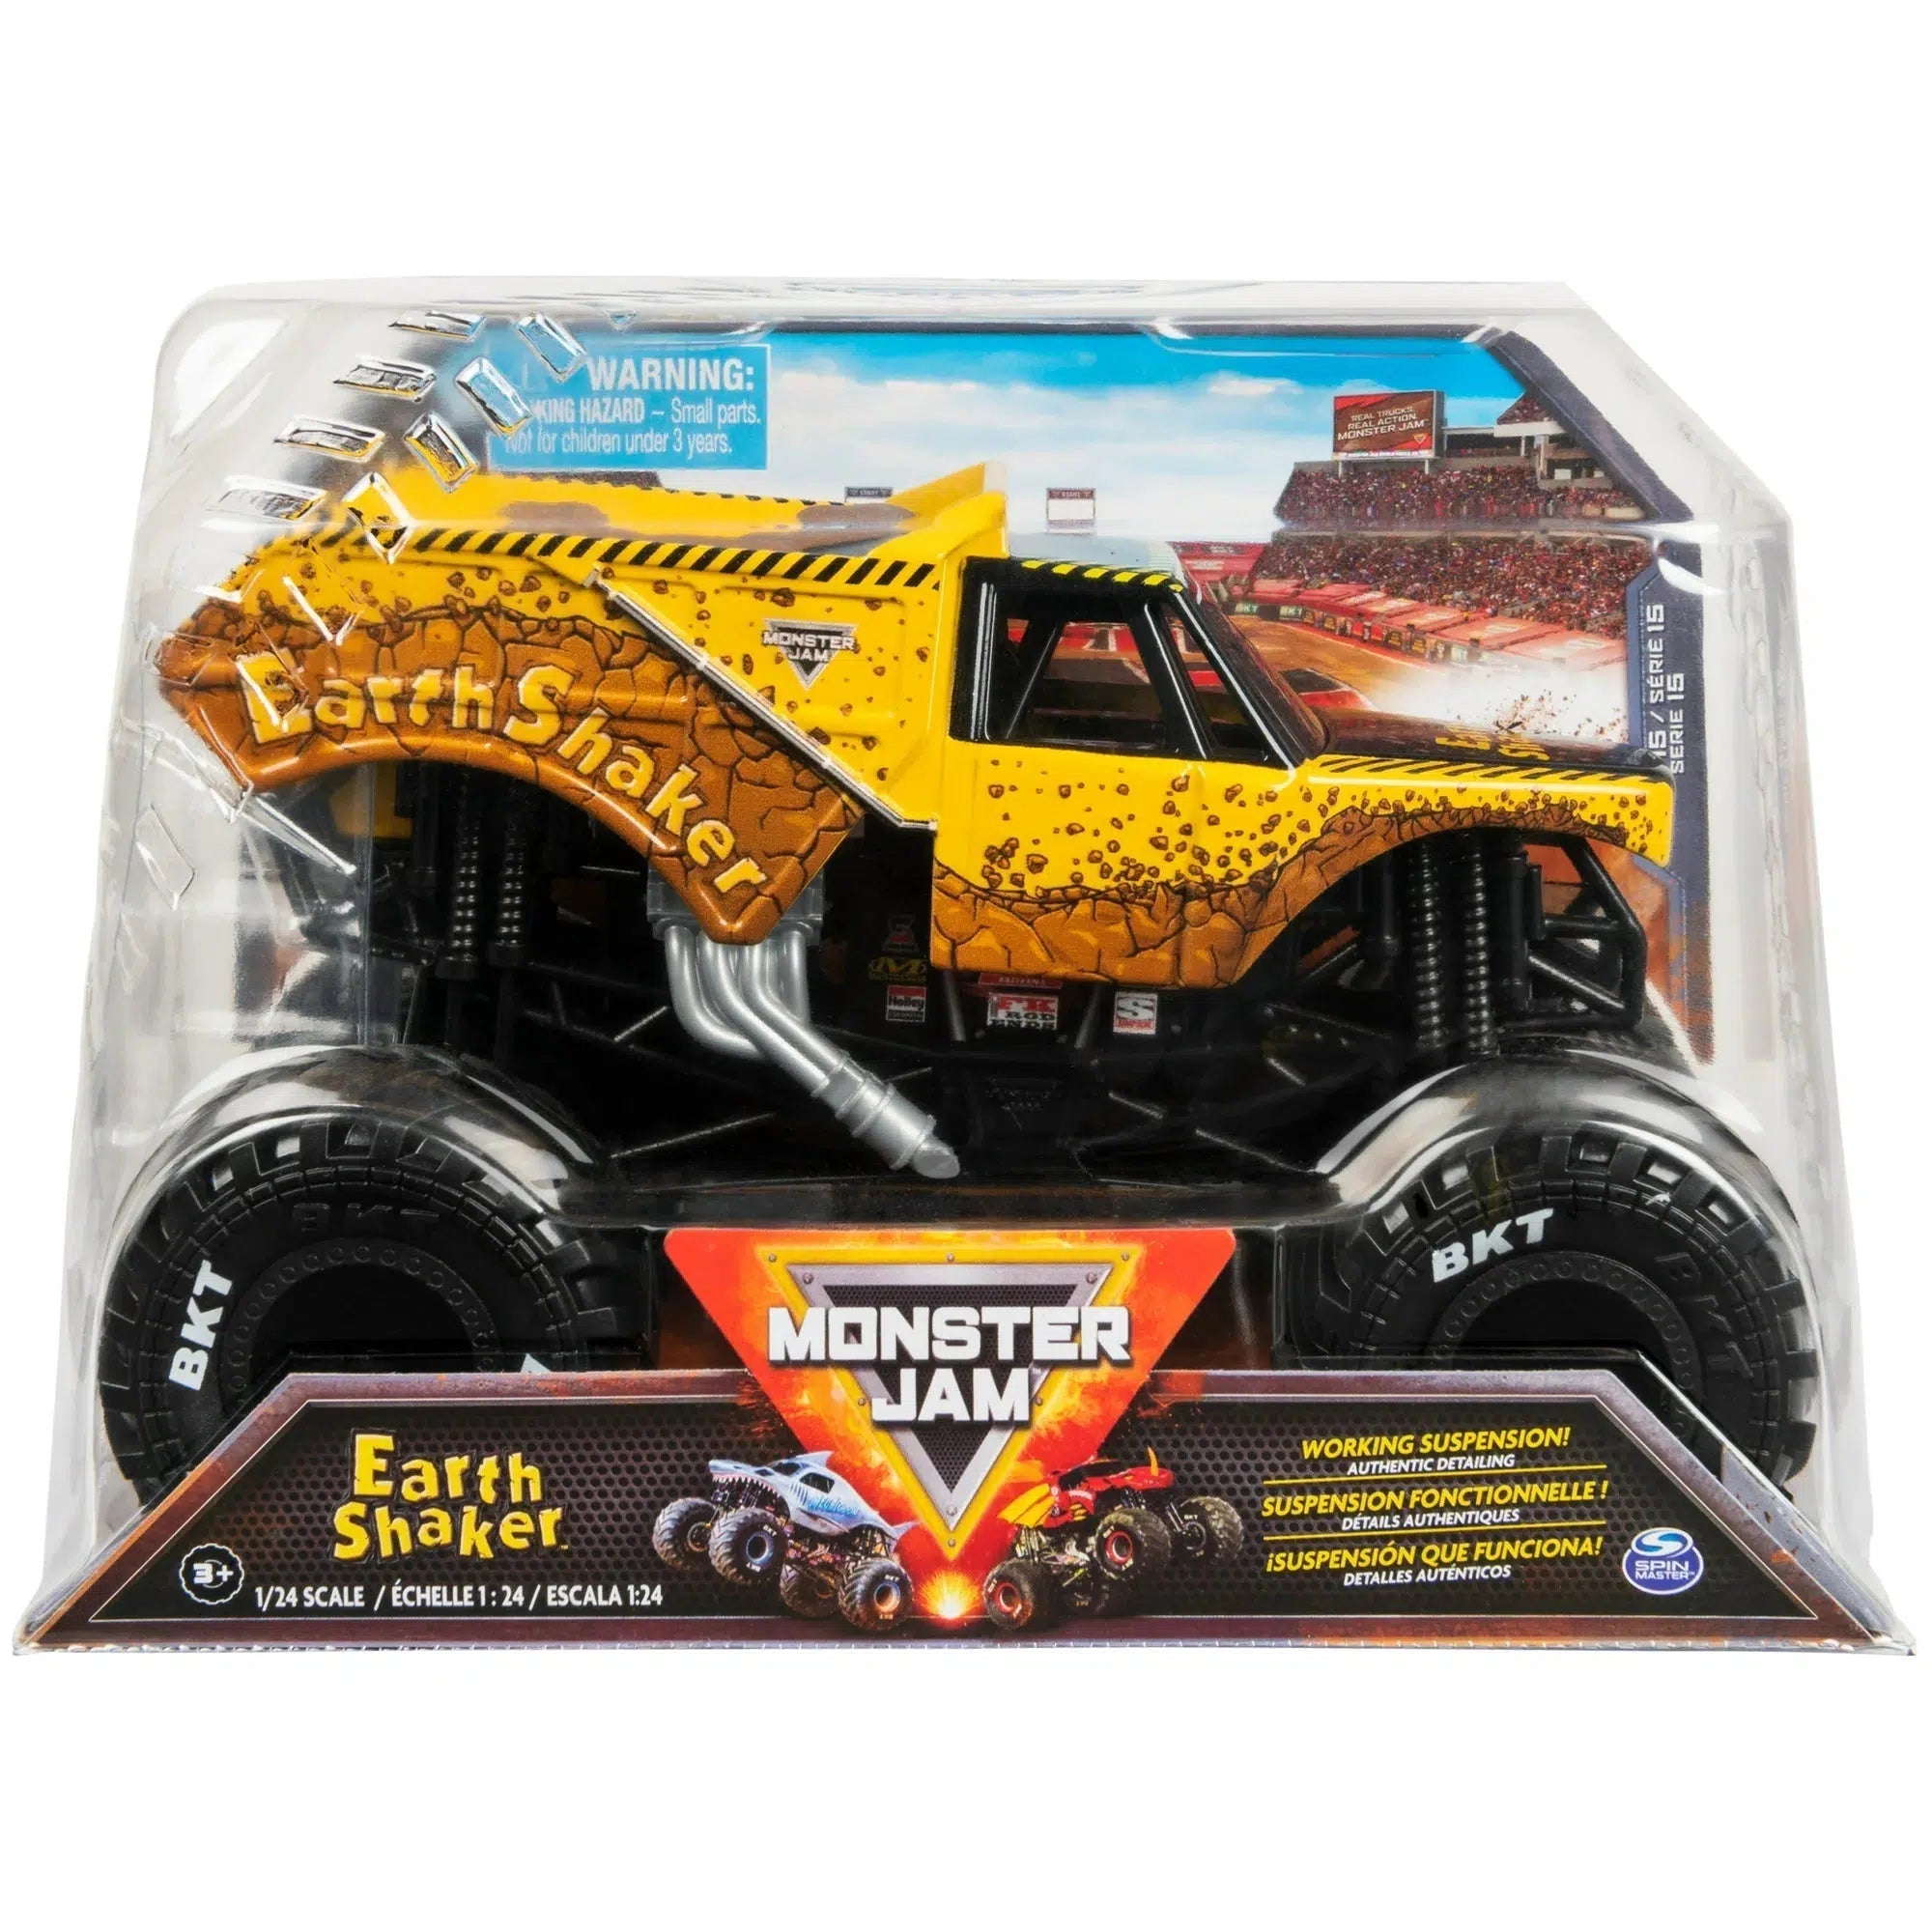 Spin Master-Monster Jam, 1:24 Scale Monster Truck-20136910-Earth Shaker-Legacy Toys